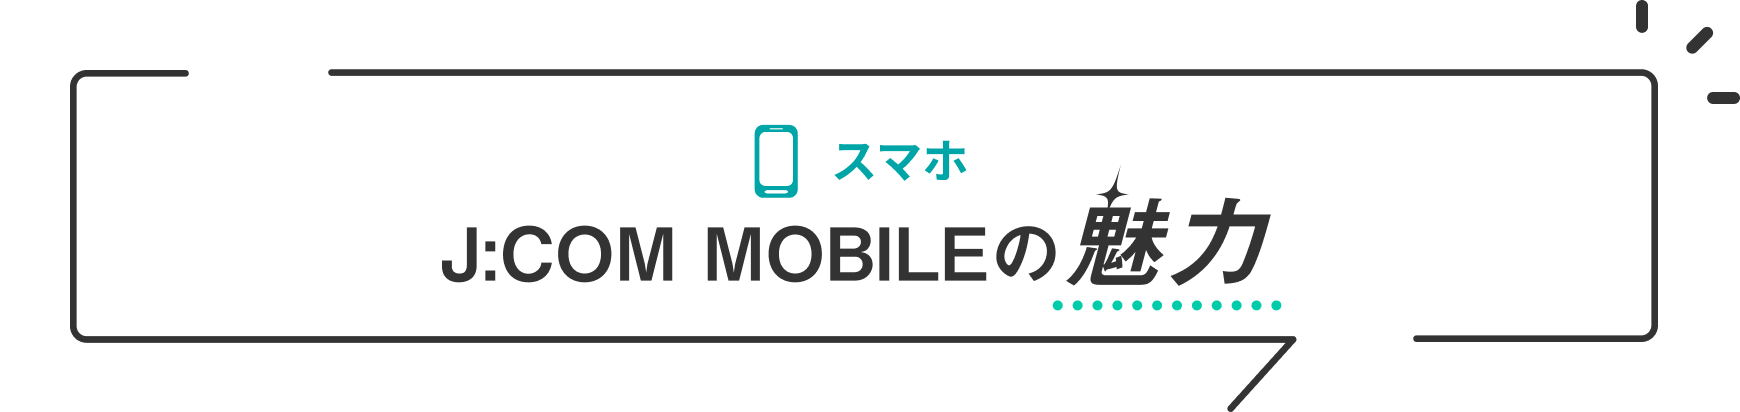 Charme do smartphone J:COM MOBILE